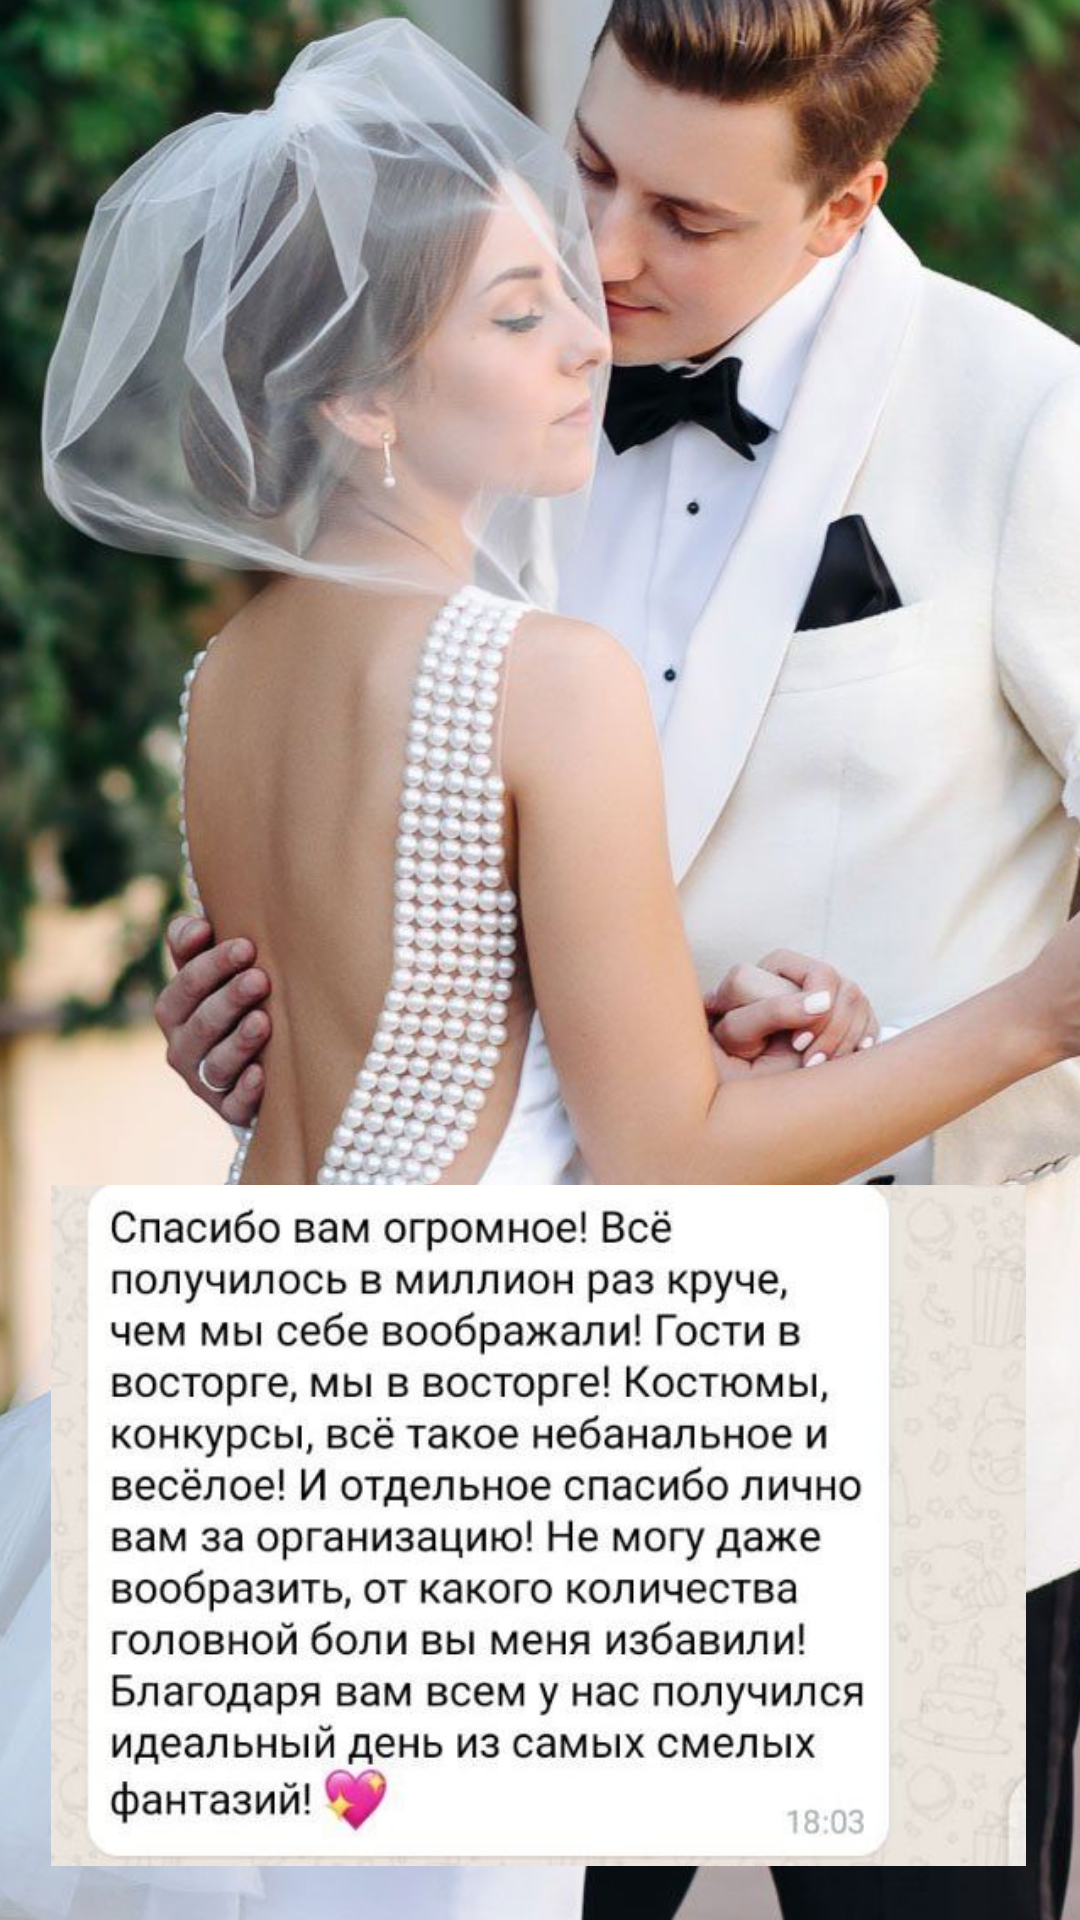 Организация свадьбы в Белгороде
от компании Pandaevent